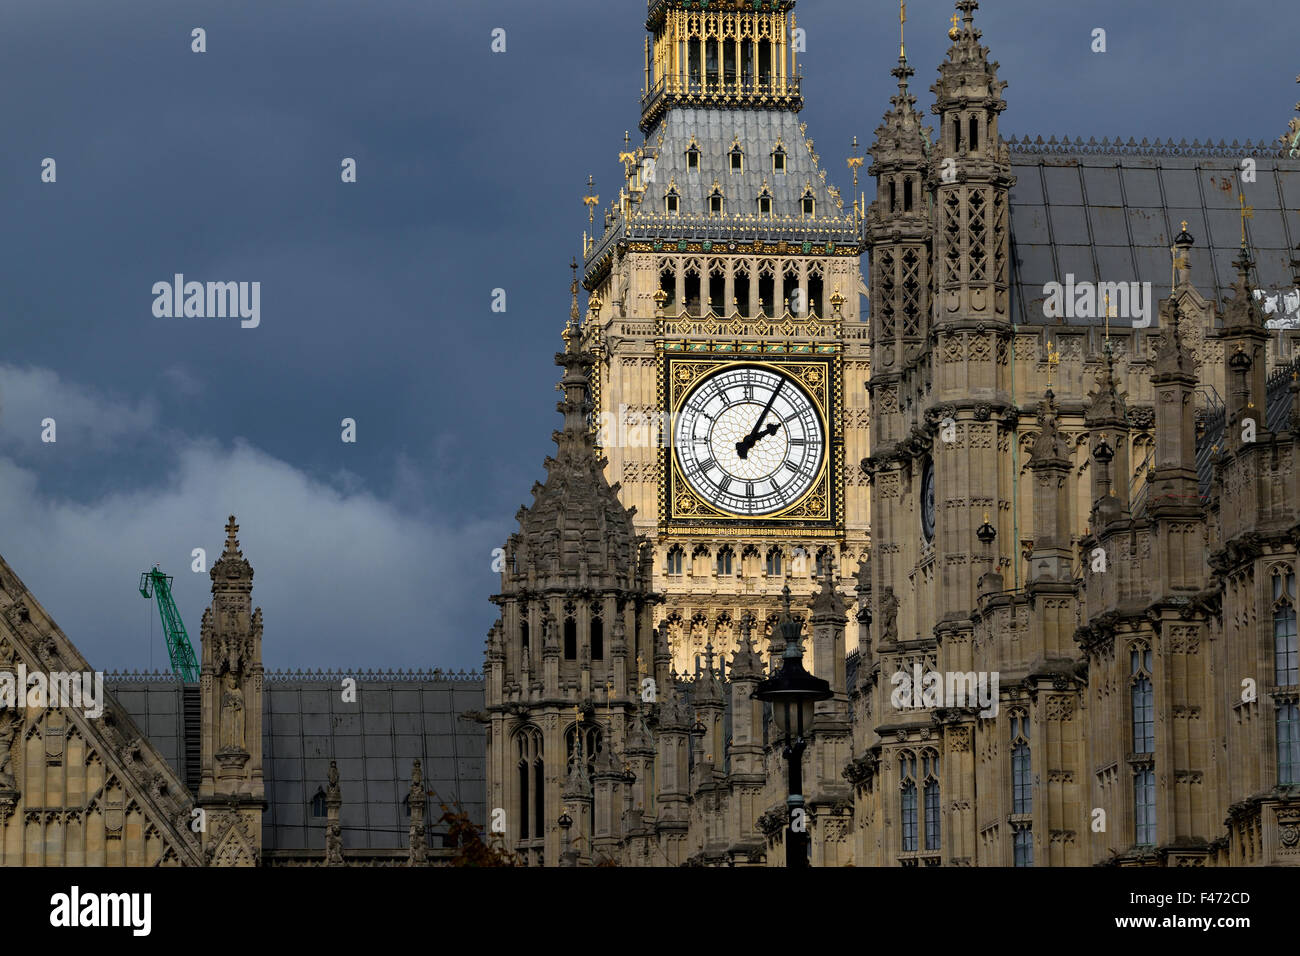 London, England, Vereinigtes Königreich. Big Ben und den Houses of Parliament bei schlechtem Wetter - Sonne auf der Uhr Stockfoto